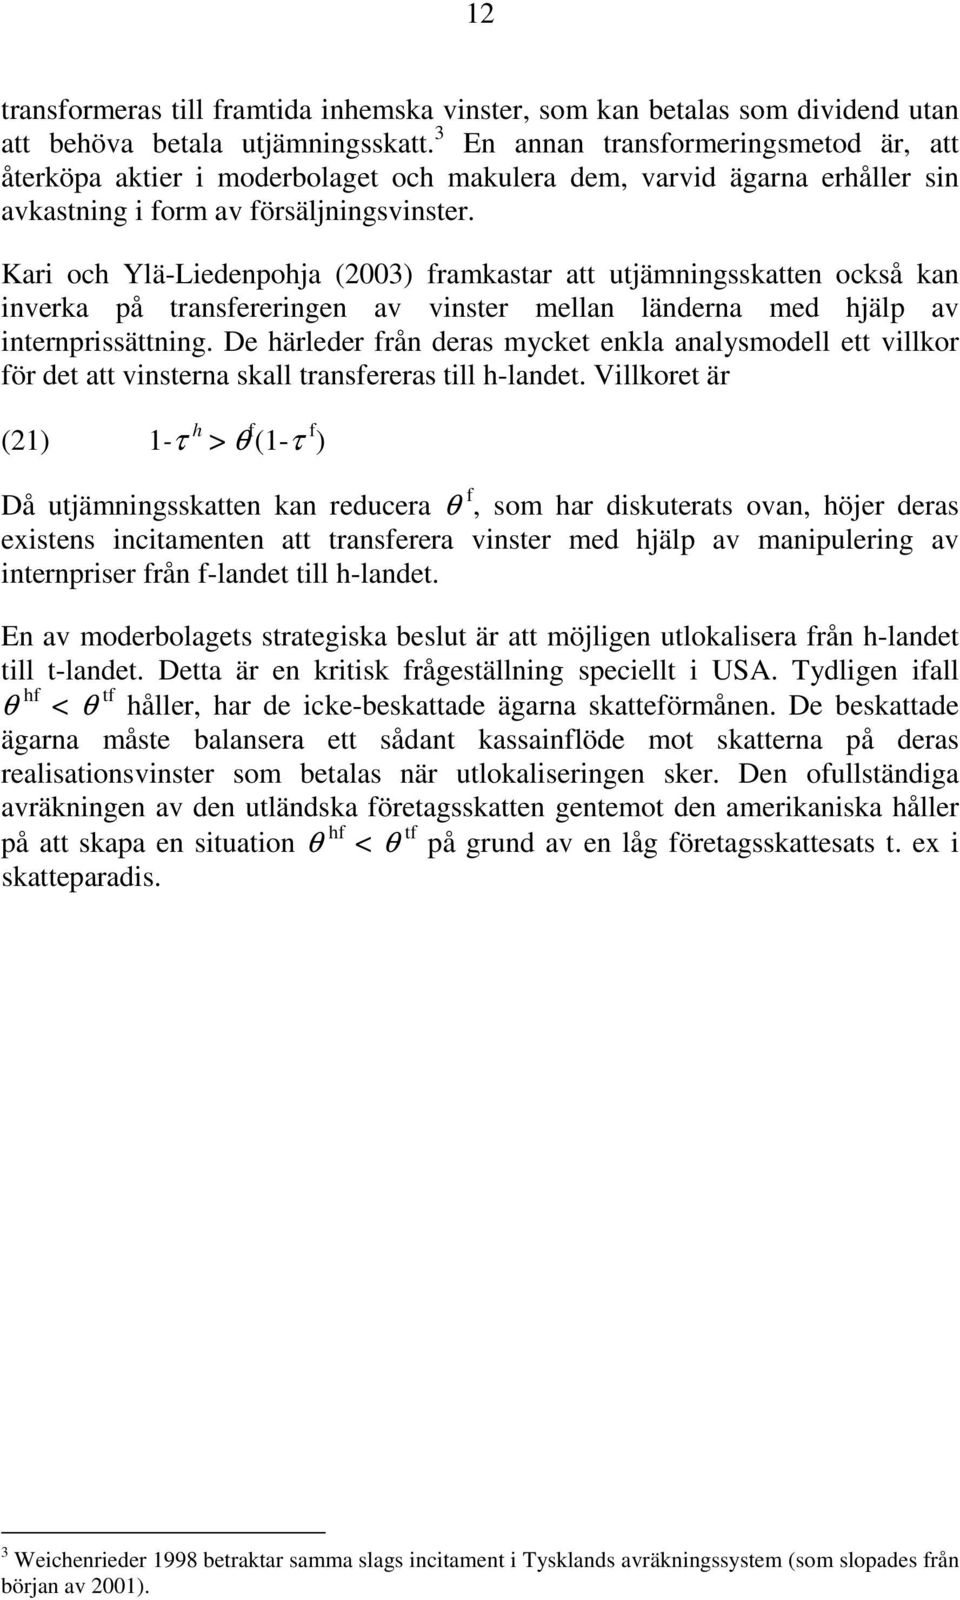 Kari och Ylä-Liedenpohja (2003 framkastar att utjämningsskatten också kan inverka på transfereringen av vinster mellan länderna med hjälp av internprissättning.